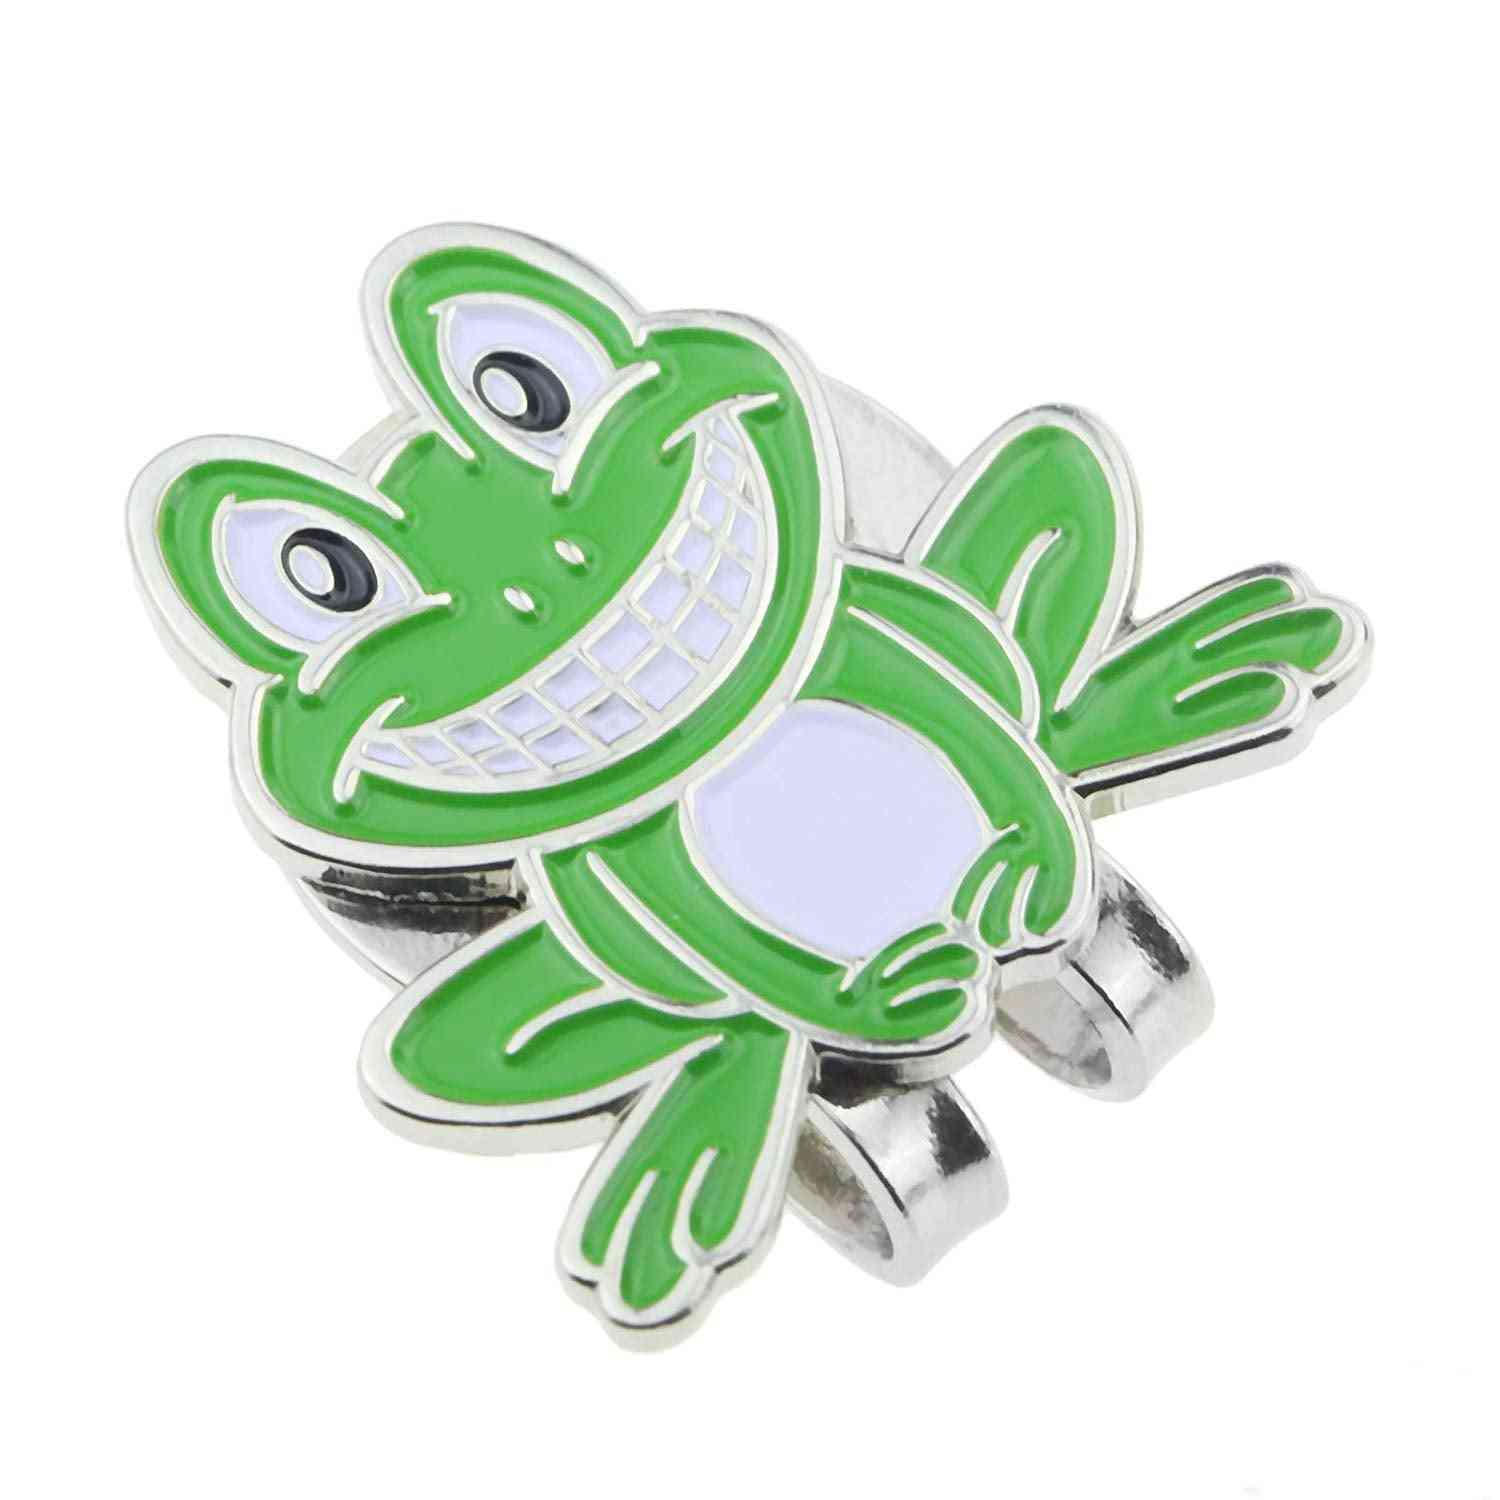 Marqueur de balle de golf grenouille souriante marque verte avec capuchon magnétique